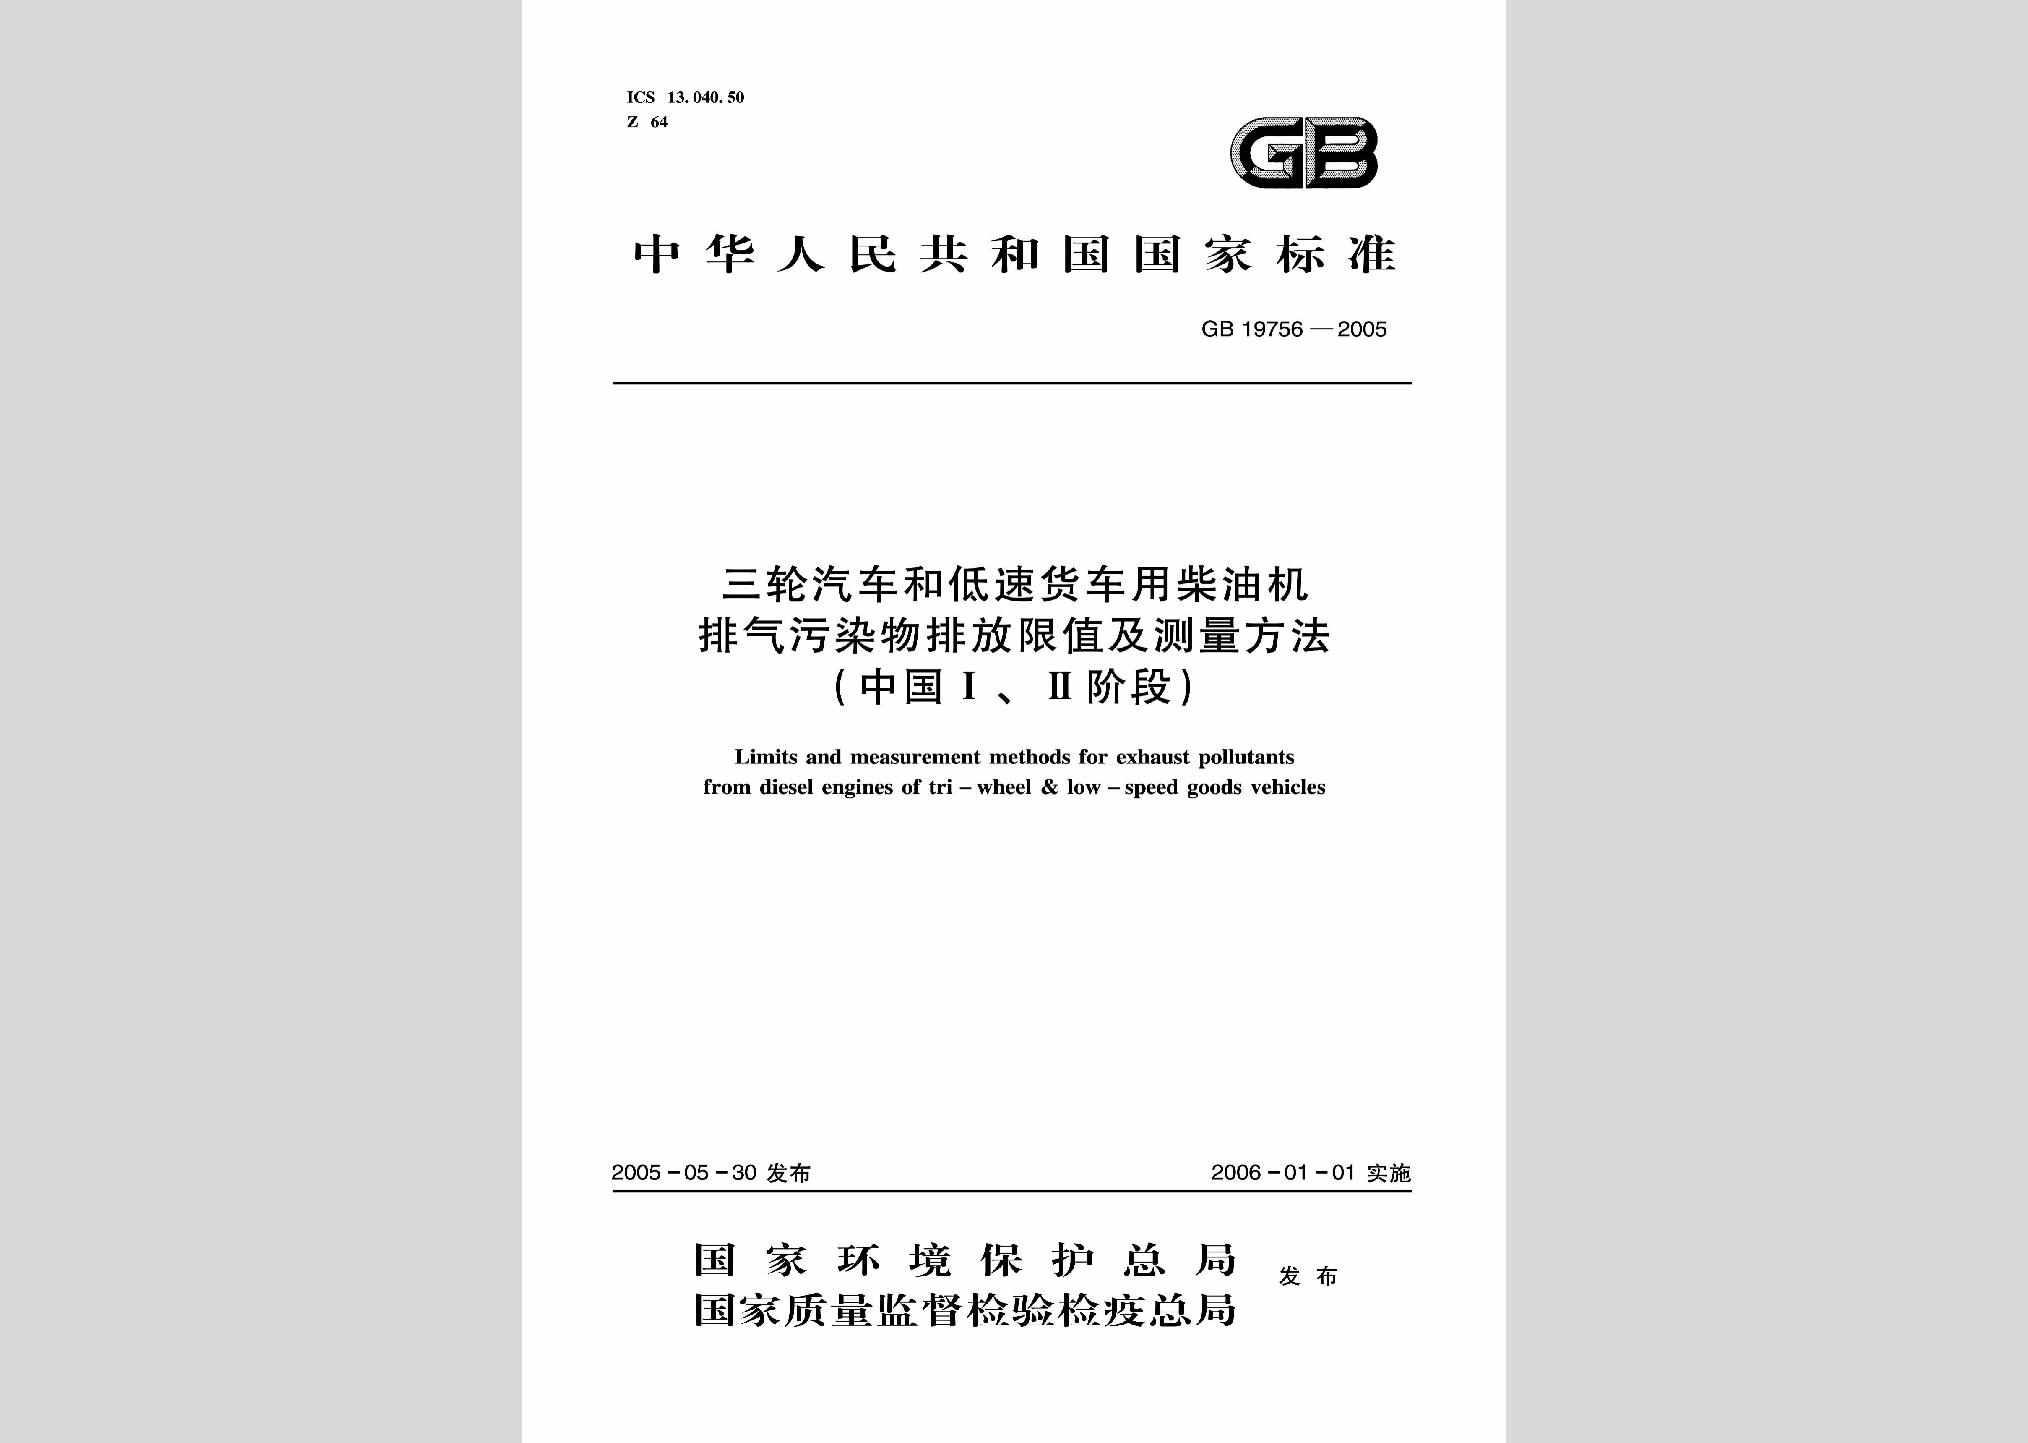 GB19756-2005：三轮汽车和低速货车用柴油机排气污染物排放限值及测量方法(中国I、II阶段)